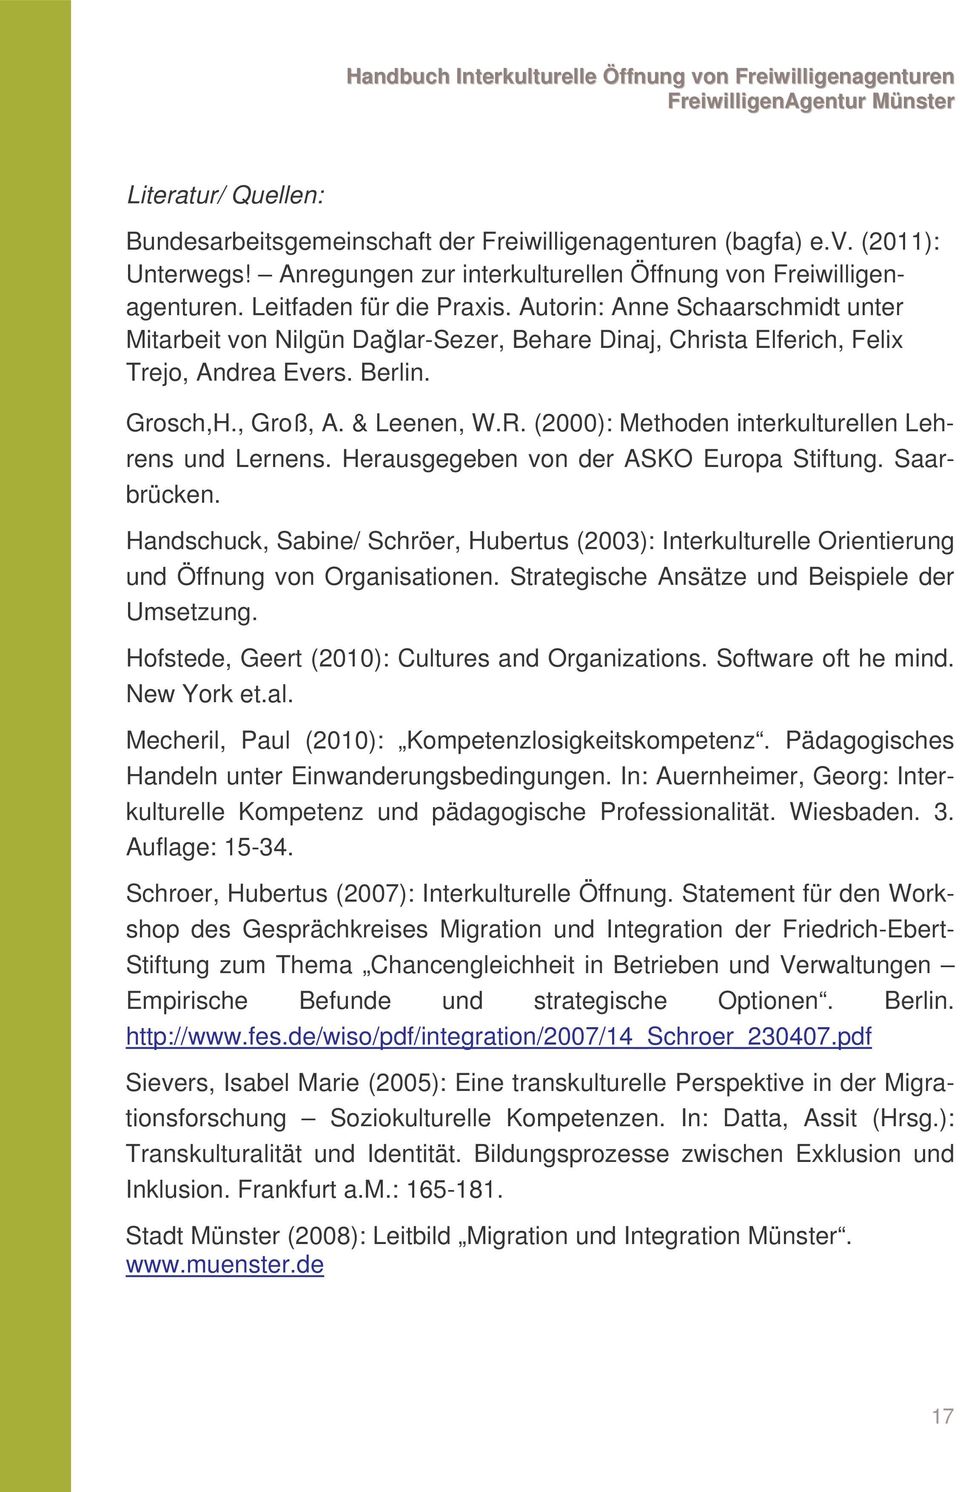 (2000): Methoden interkulturellen Lehrens und Lernens. Herausgegeben von der ASKO Europa Stiftung. Saarbrücken.